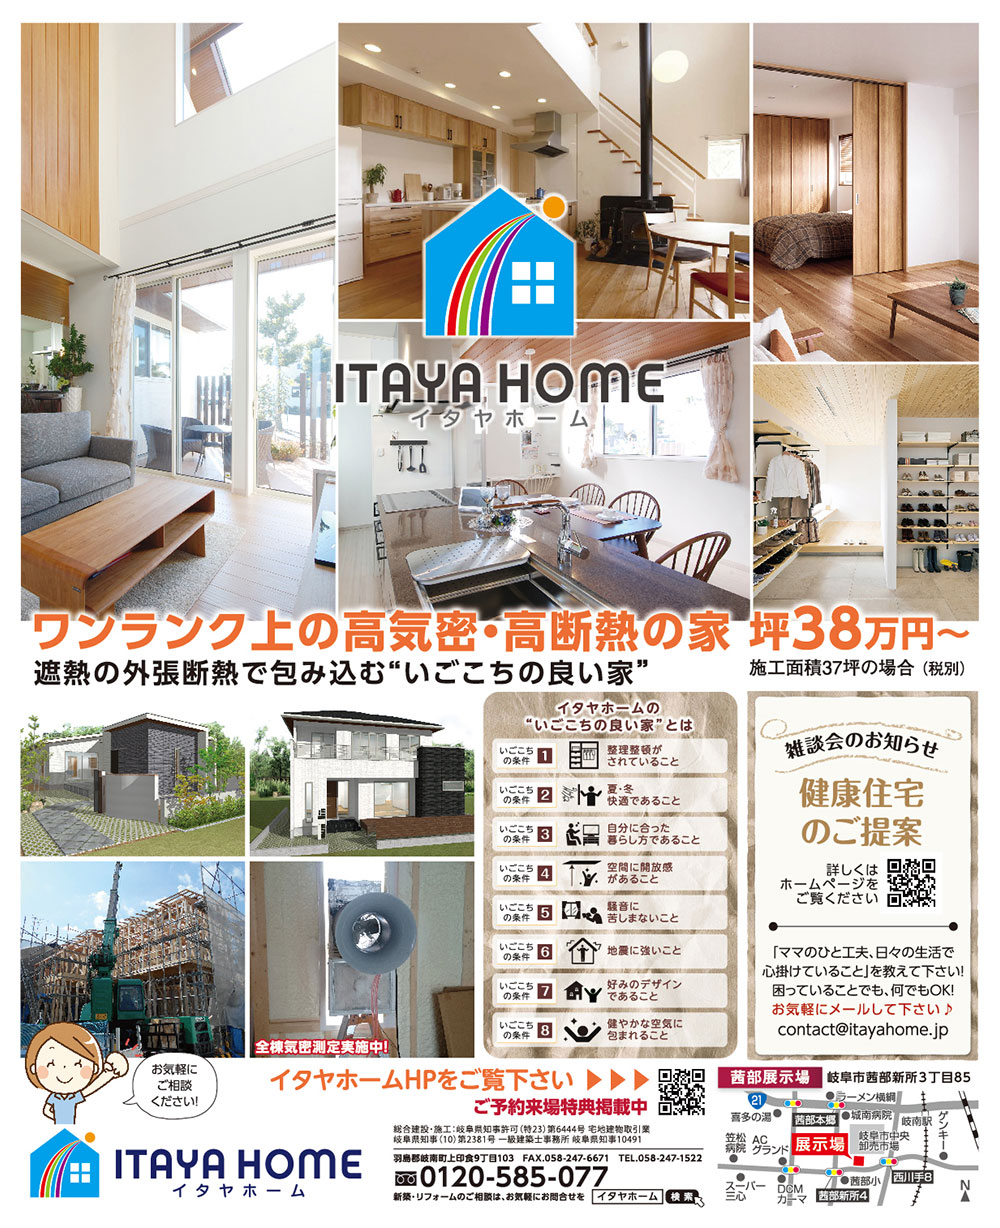 岐阜イタヤホームの注文住宅展示場イベント広告9月20日発行版。高気密高断熱の家　遮熱の外張断熱で包み込む「いごごちの良い家」